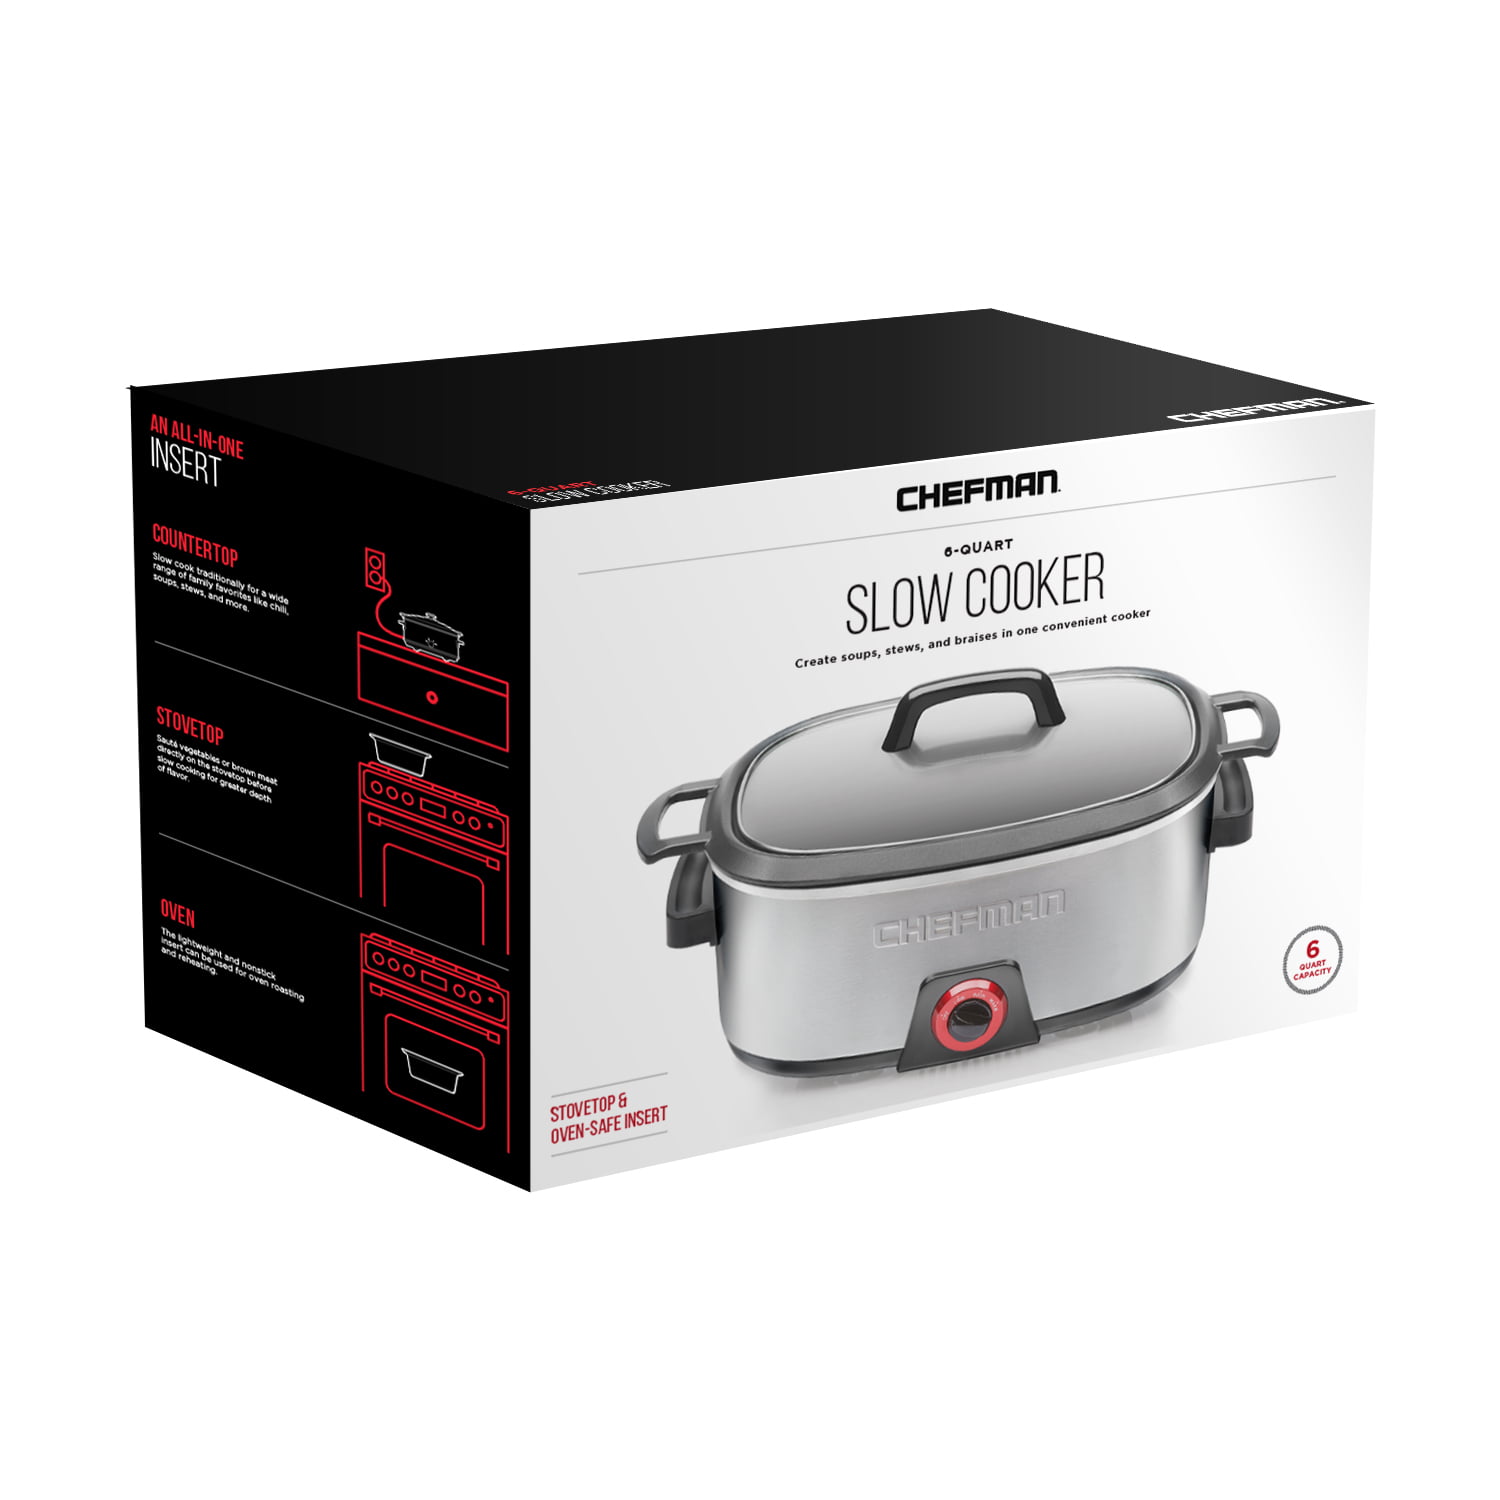 Chefmate 1.5 Quart Slow Cooker Crock Pot Crockpot NEW - general for sale -  by owner - craigslist